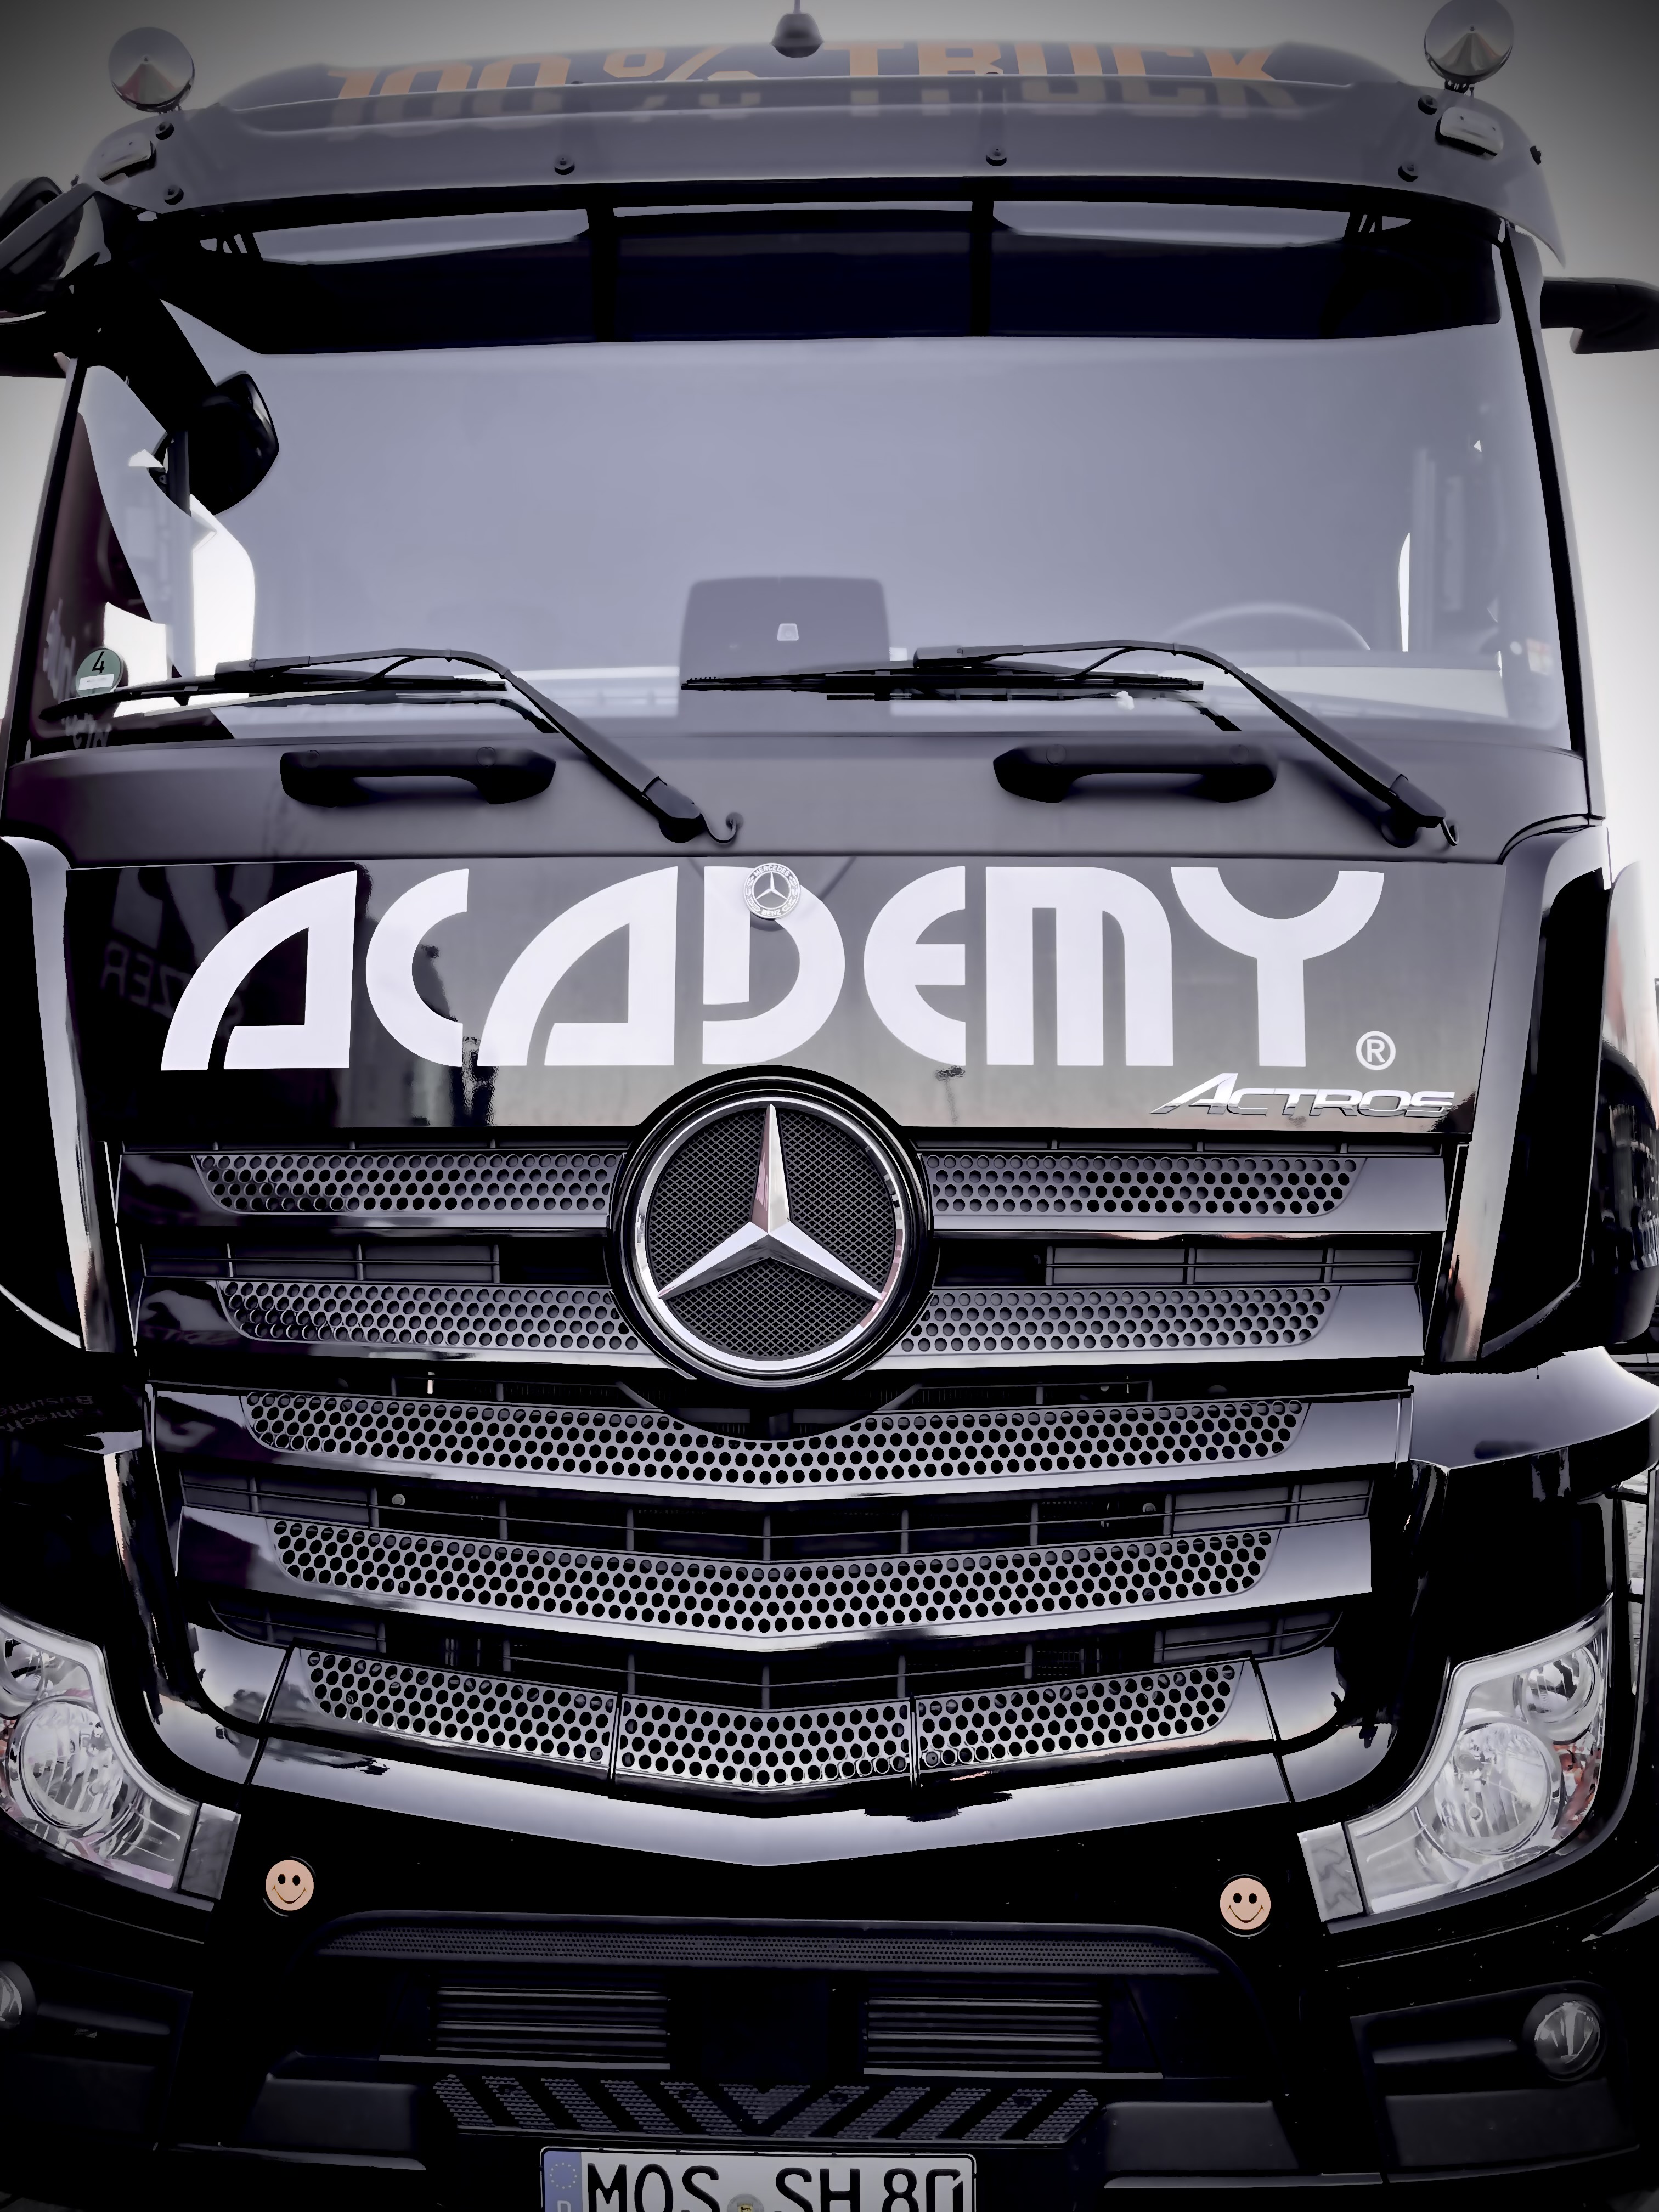 ACADEMY Fahrschule Mercedes Benz ACTROS